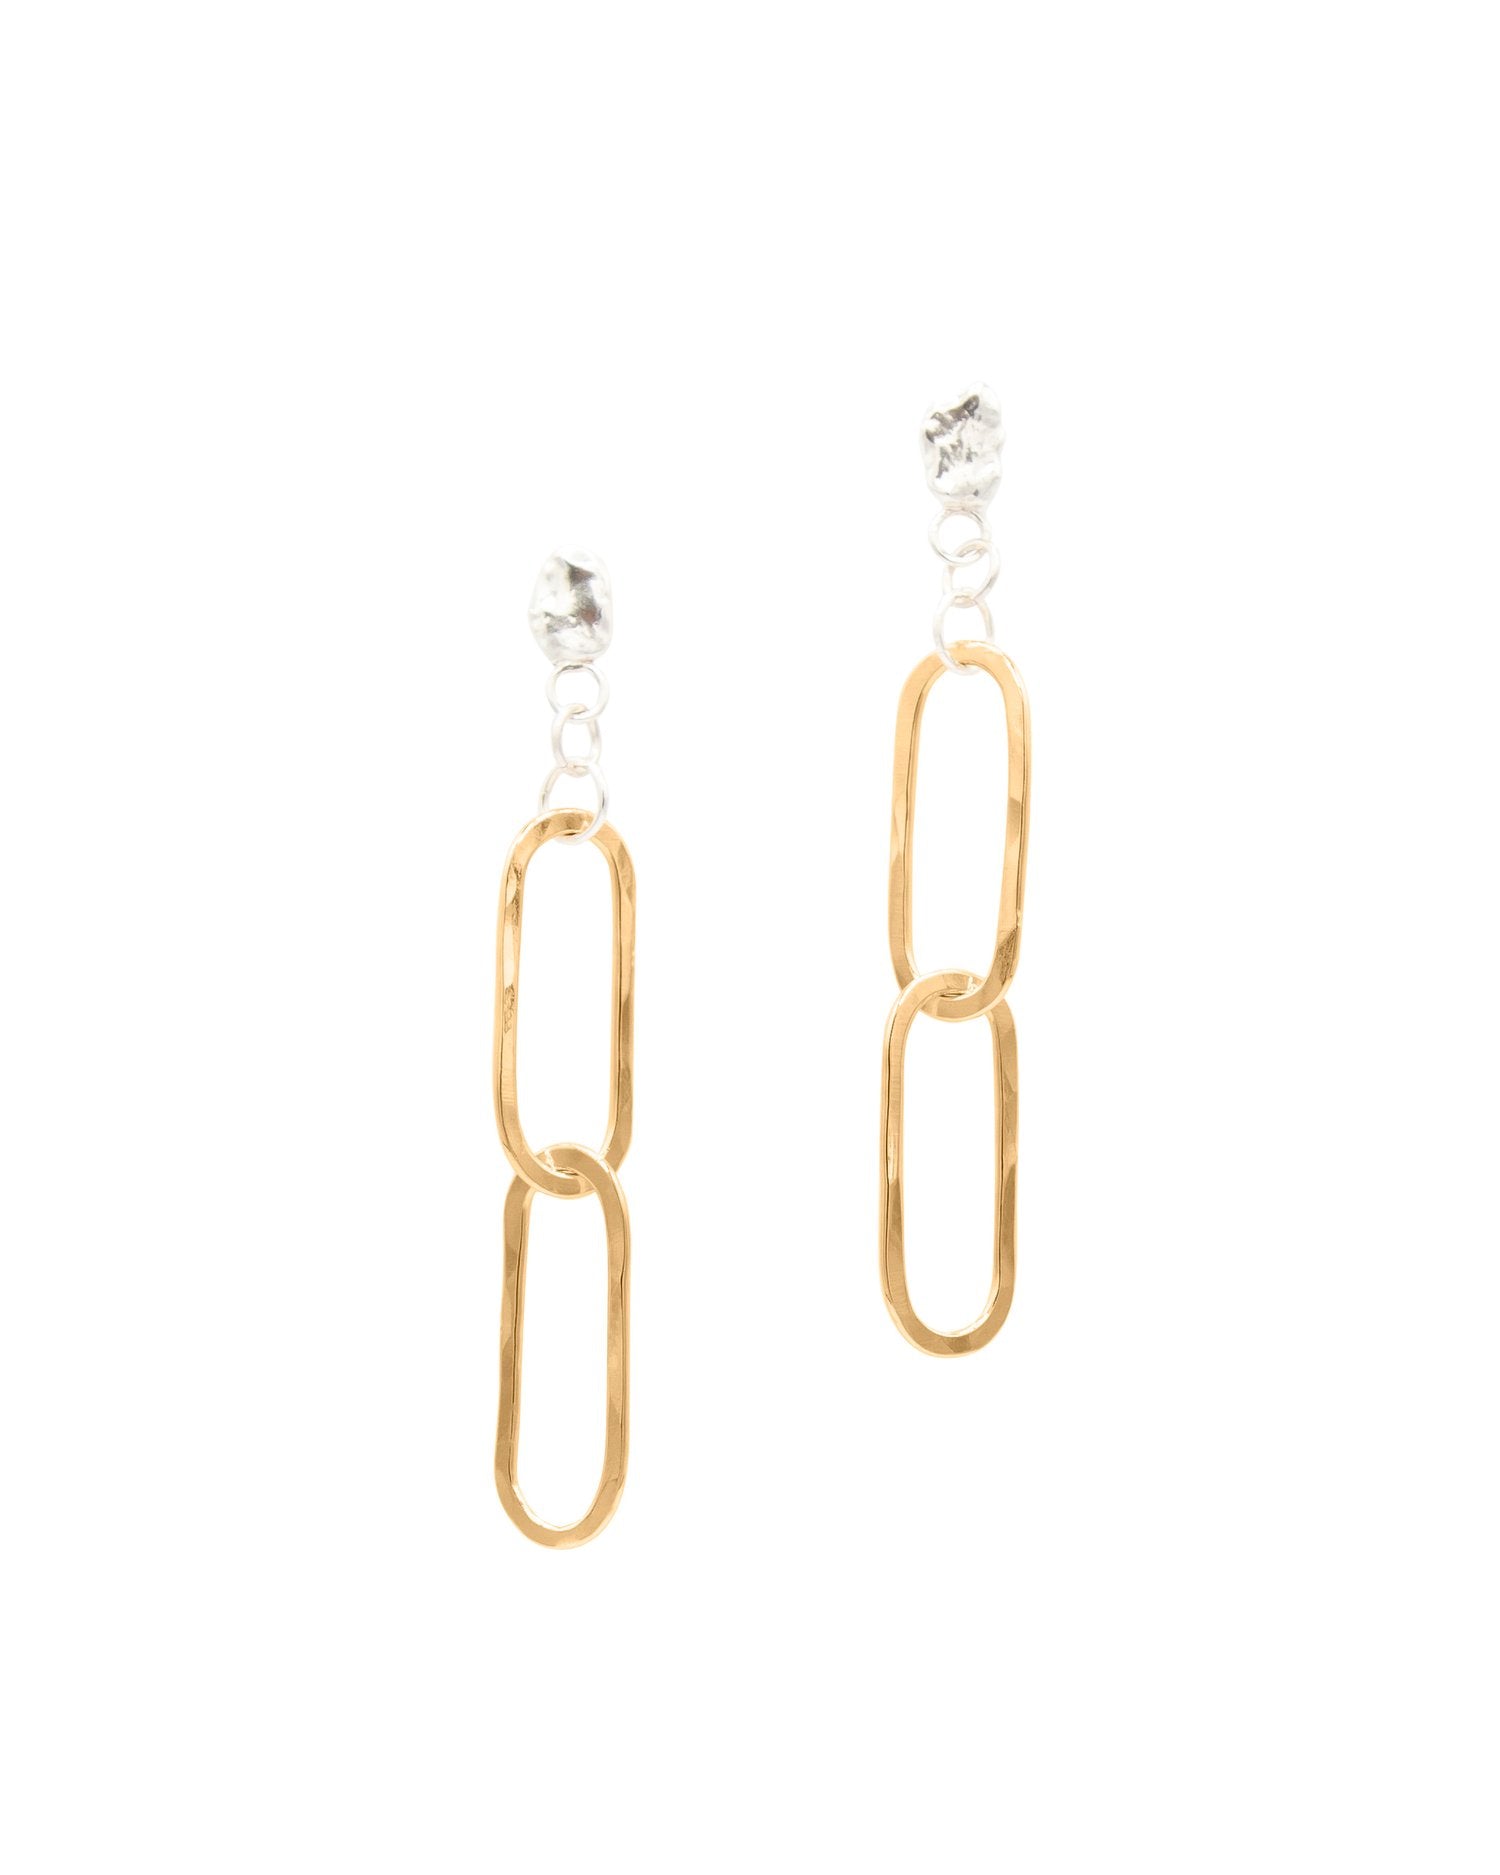 SUN & SELENE handcrafted rolo link earrings in gold fill 